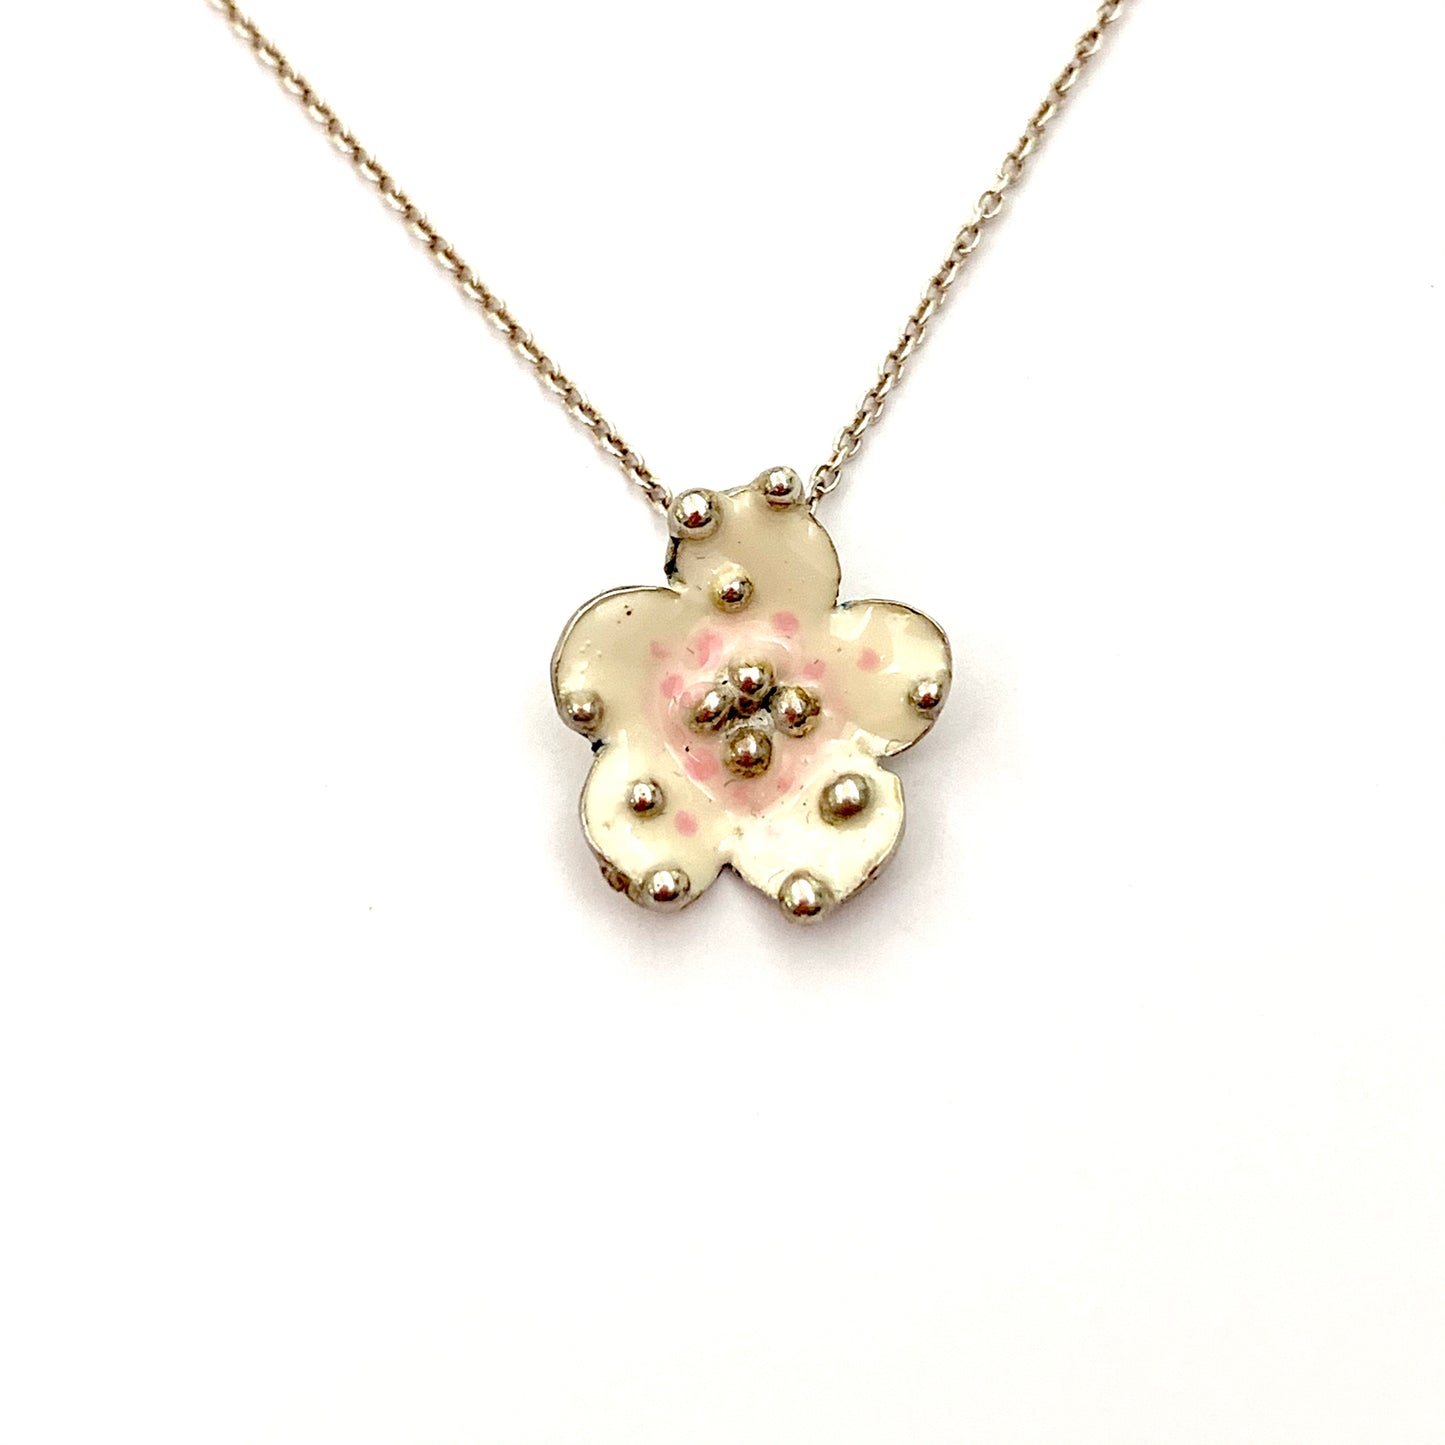 Collana in argento con fiore ricoperto da smalto naturale con sfumature avorio/rosa antico.  Lunghezza catena regolabile da 40 cm a 44 cm.  Dimensioni fiore 1 cm.